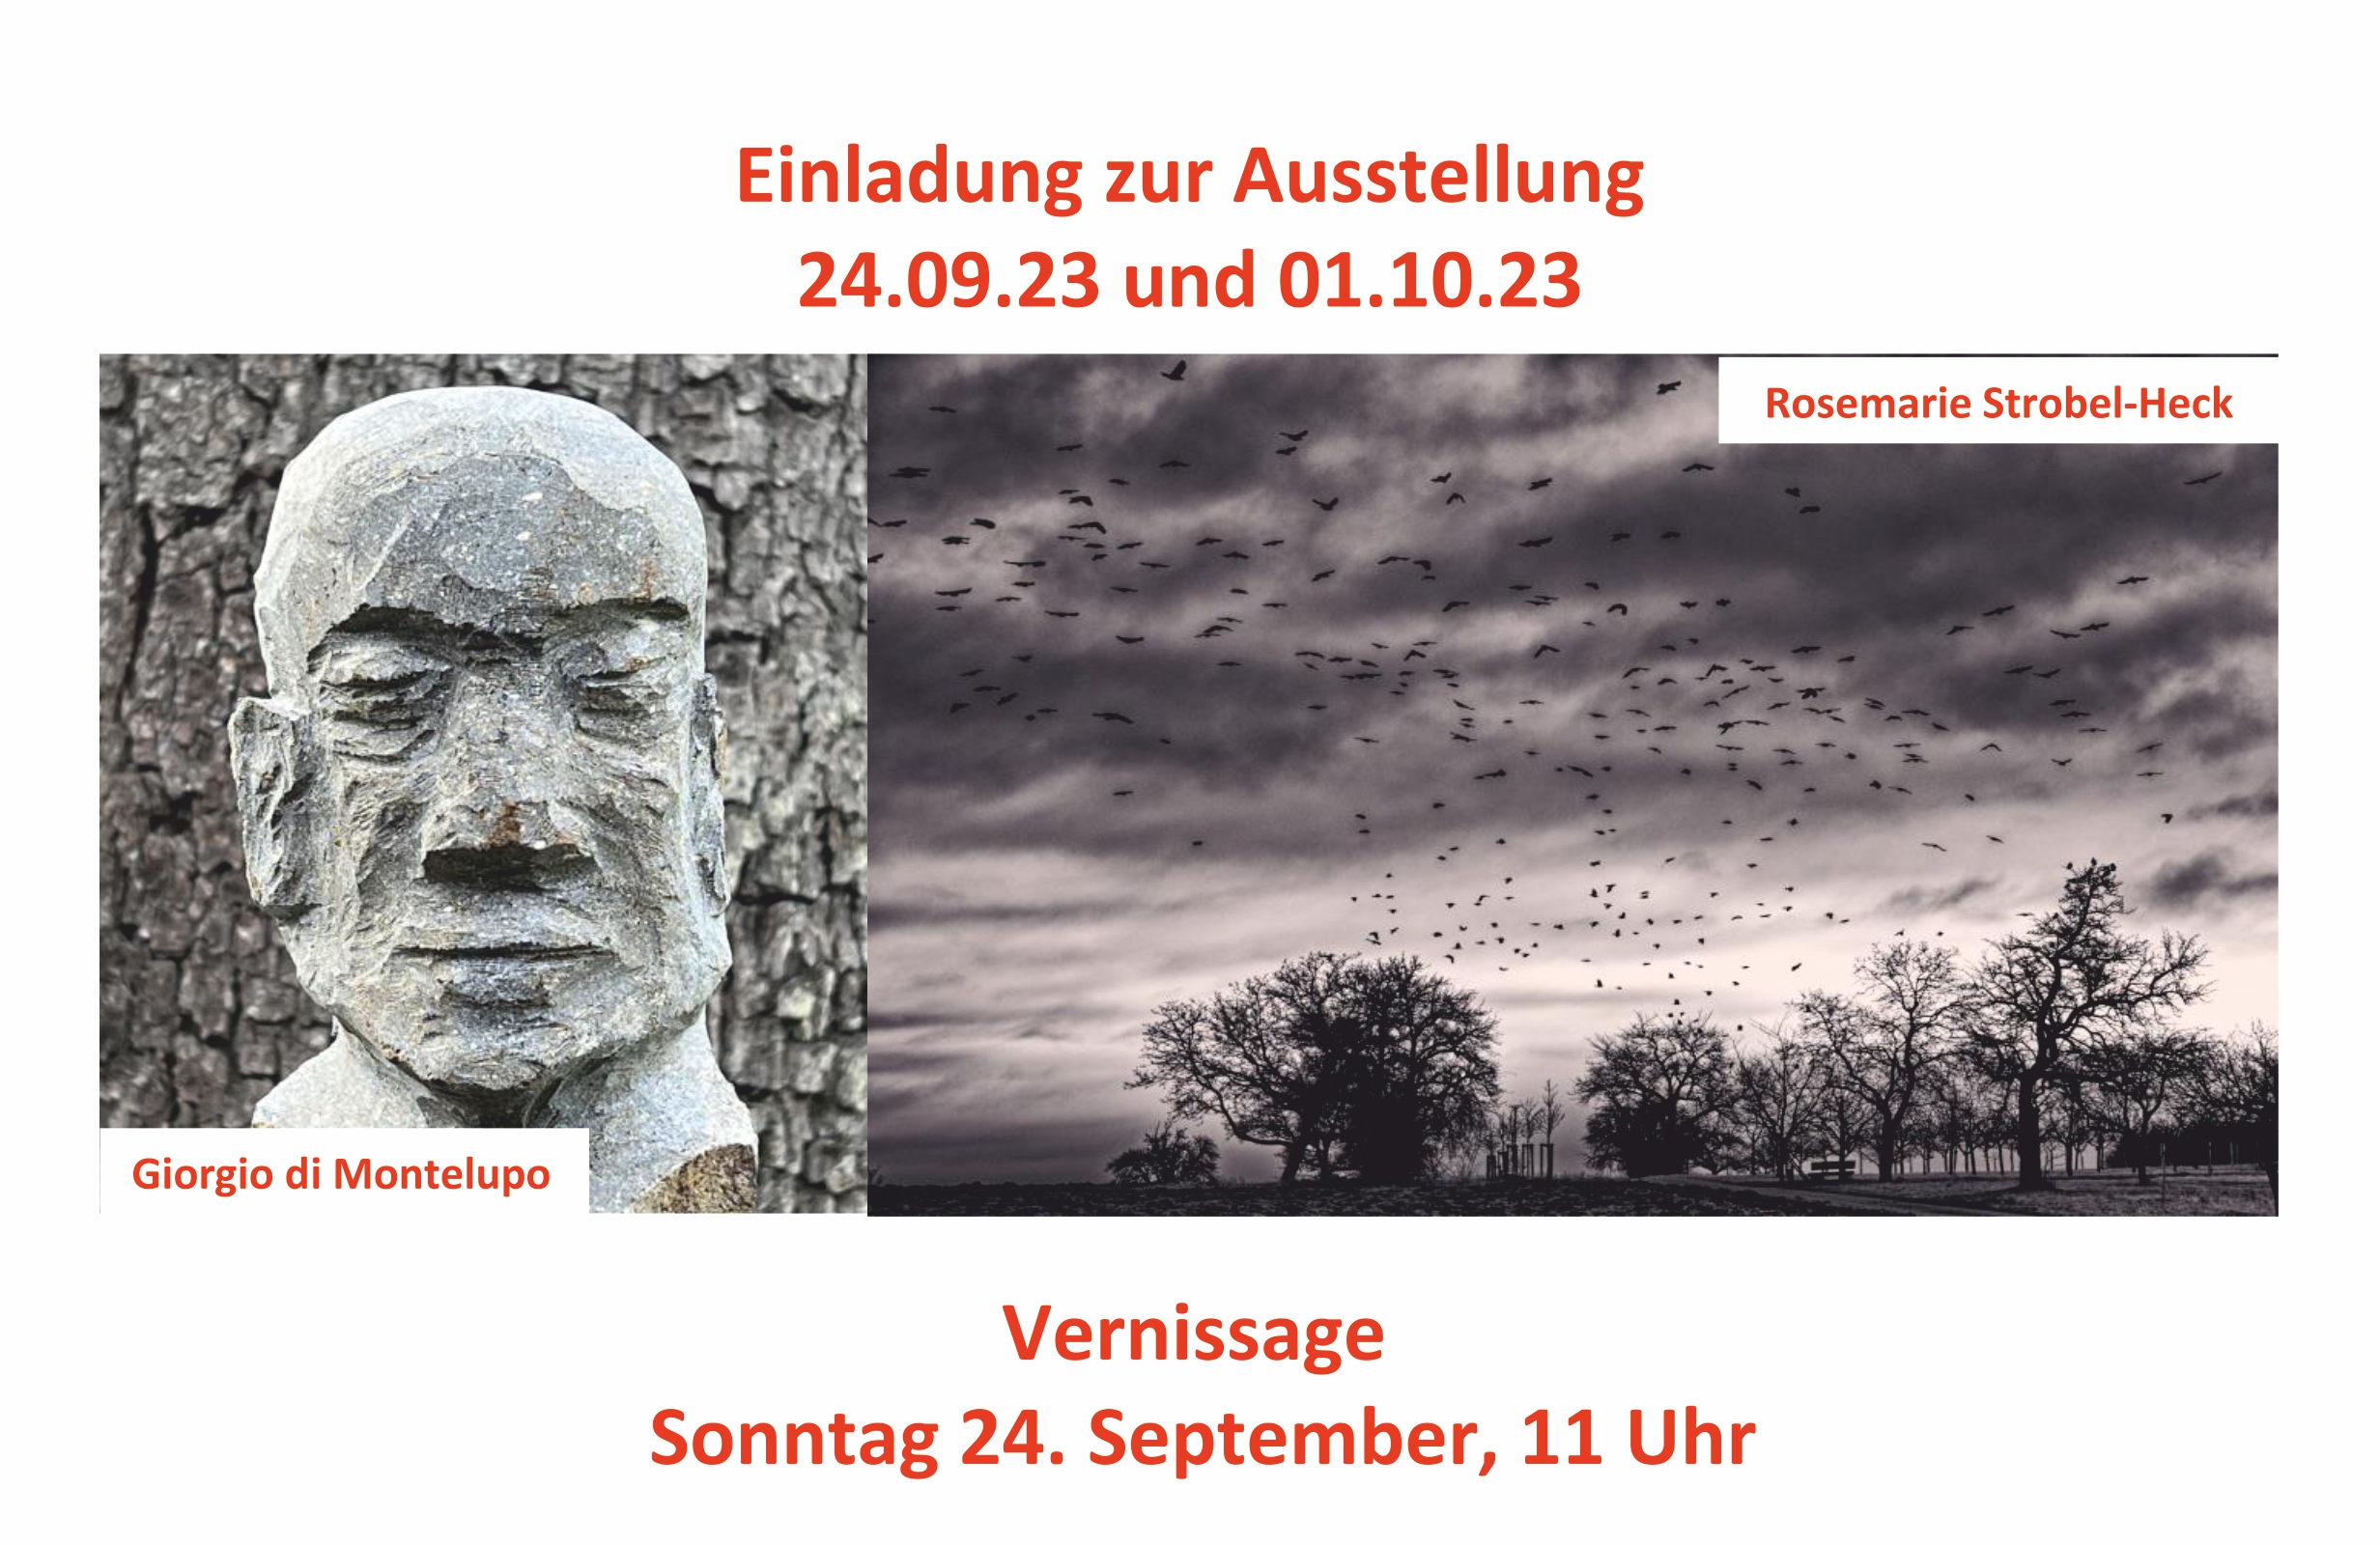 Einladungskarte für die Ausstellung in Keltern-Ellmendingen